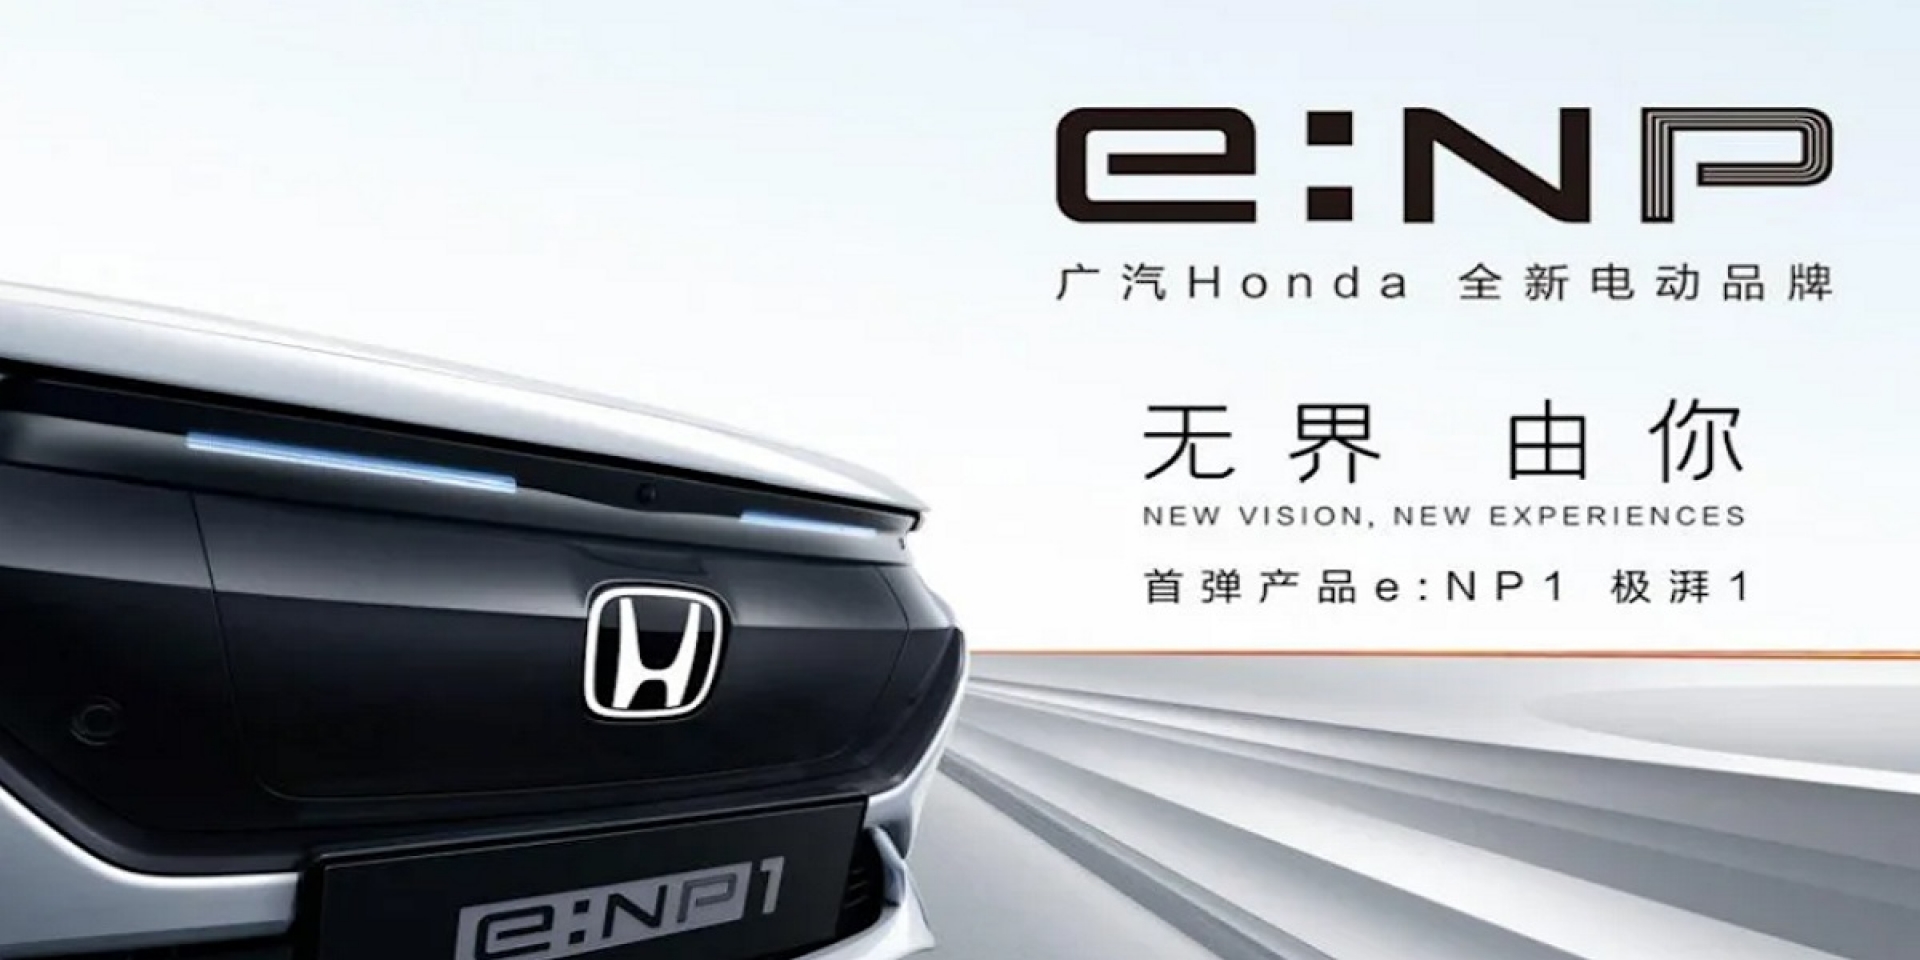 太「極湃」了吧！廣汽本田於中國市場推出全新電動車品牌「e:NP1 極湃」